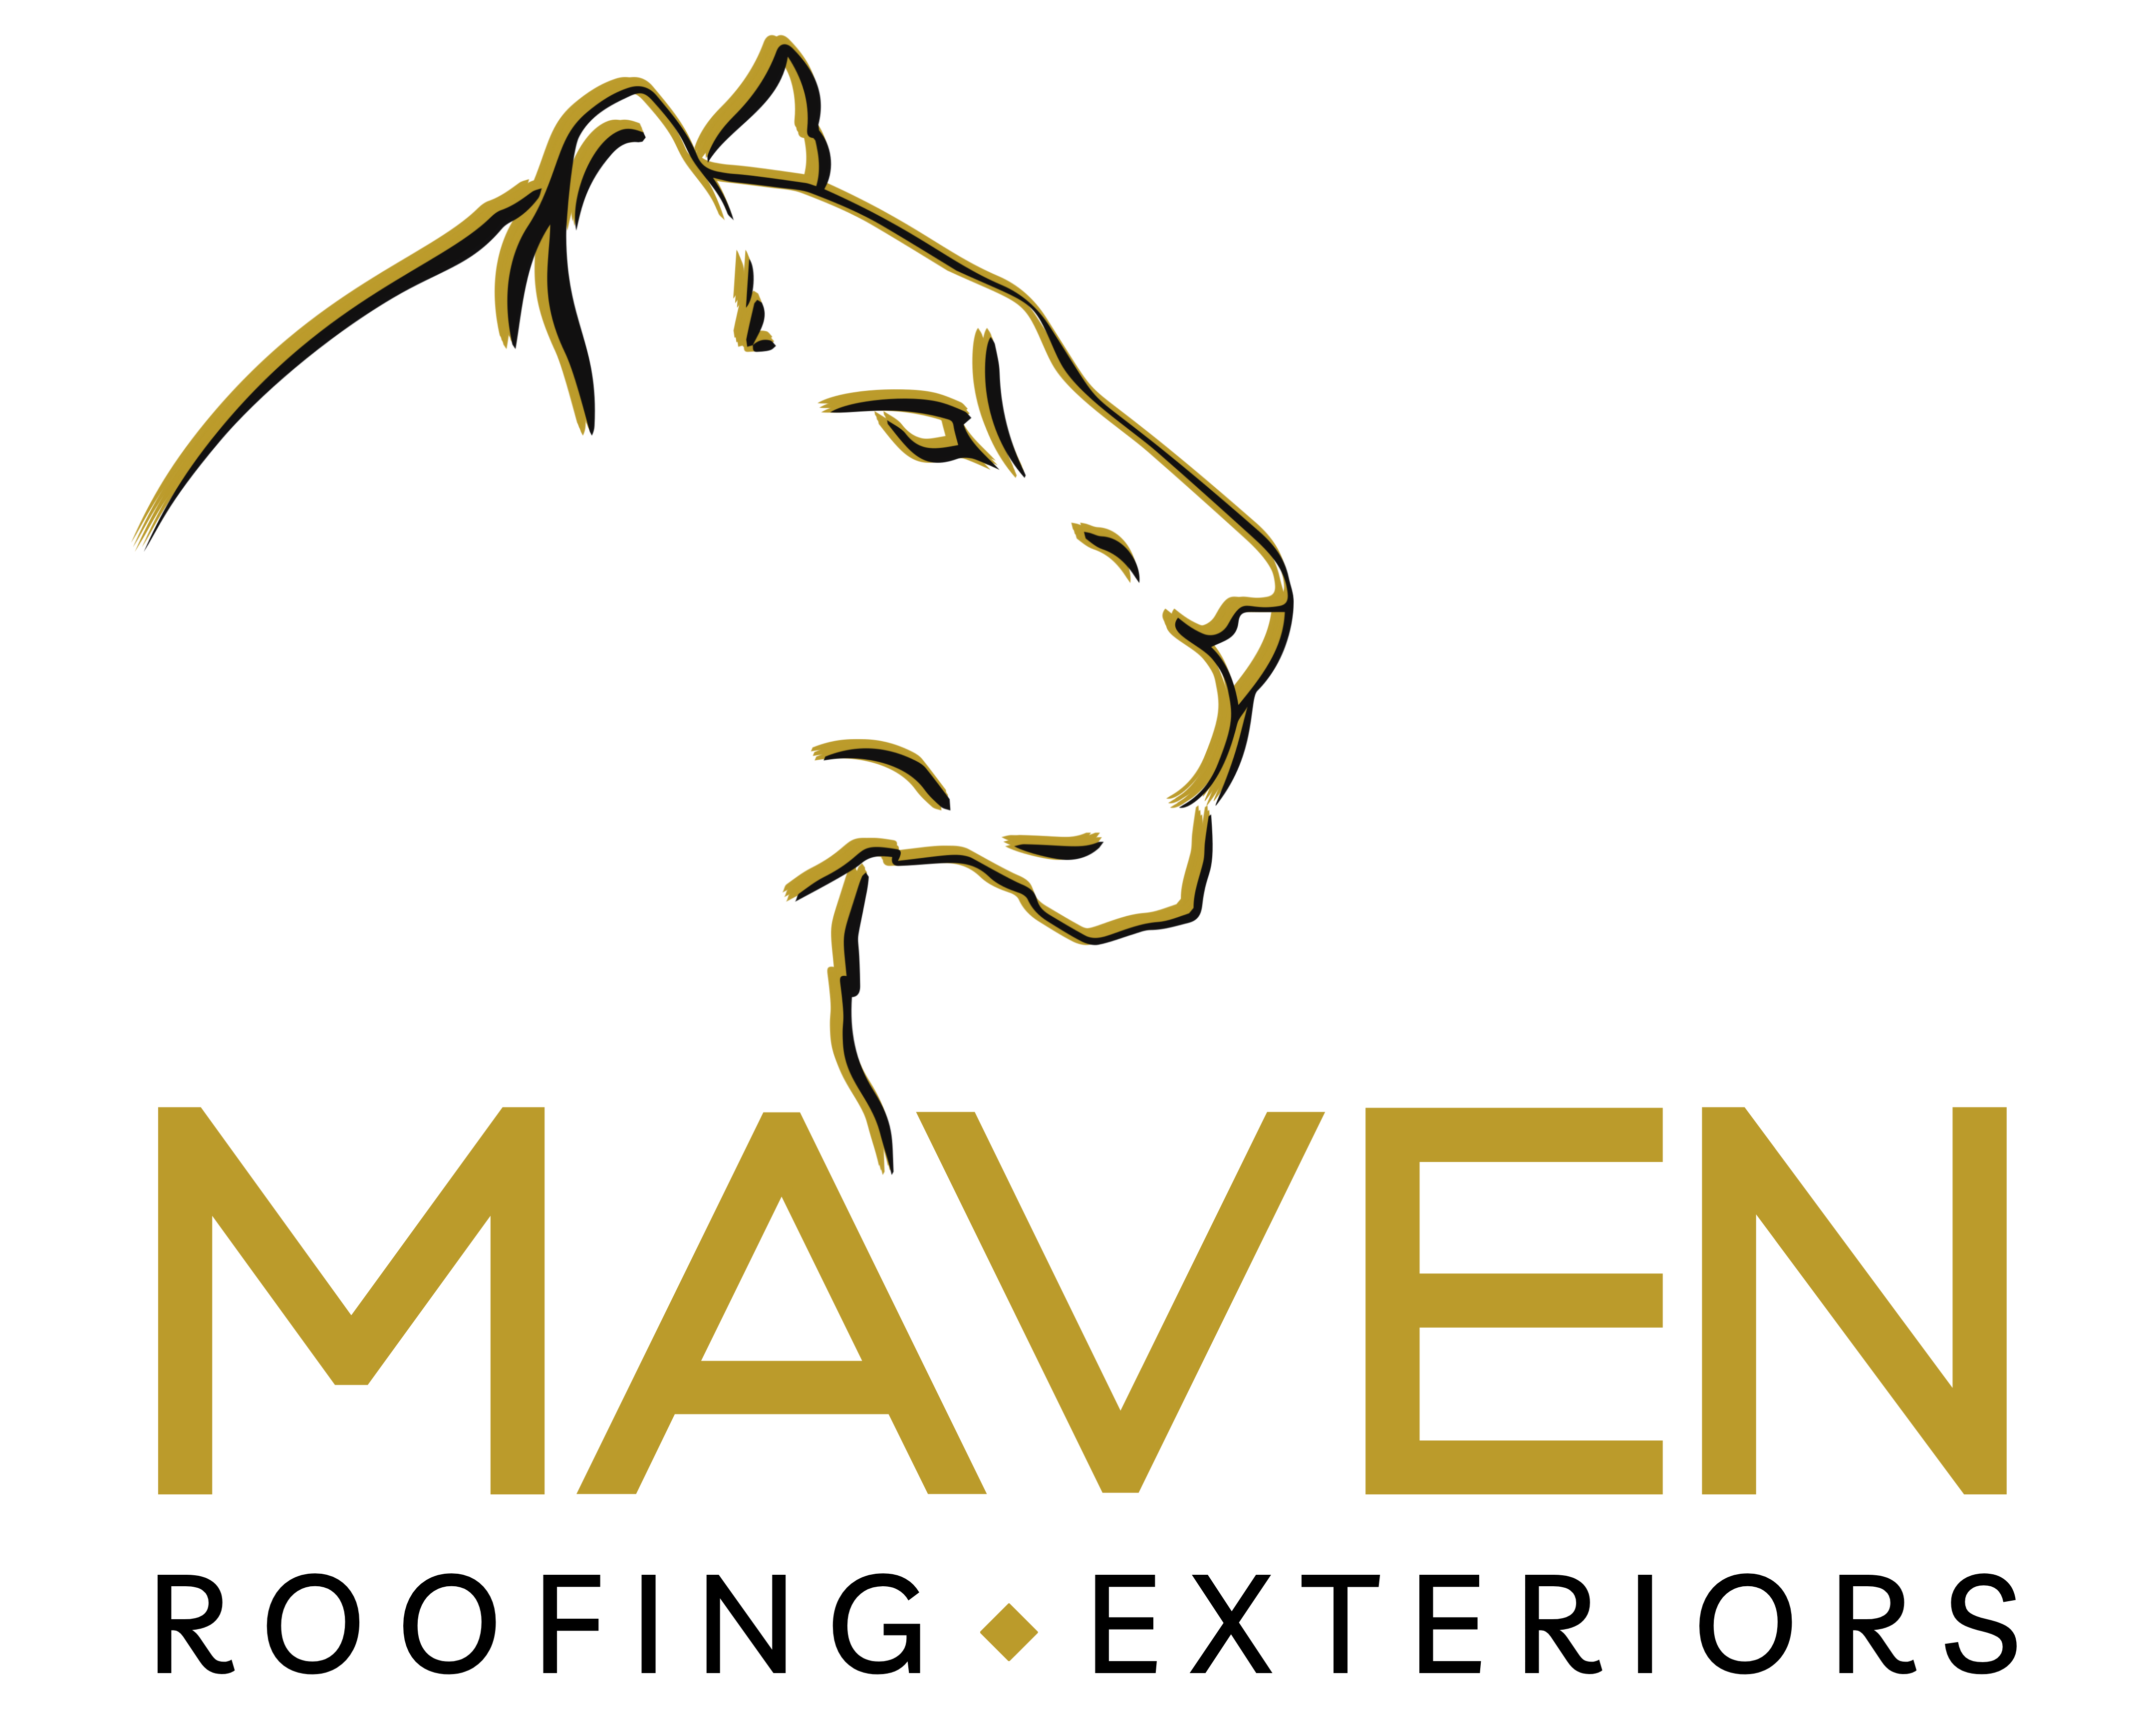 Maven Roofing & Exteriors LLC